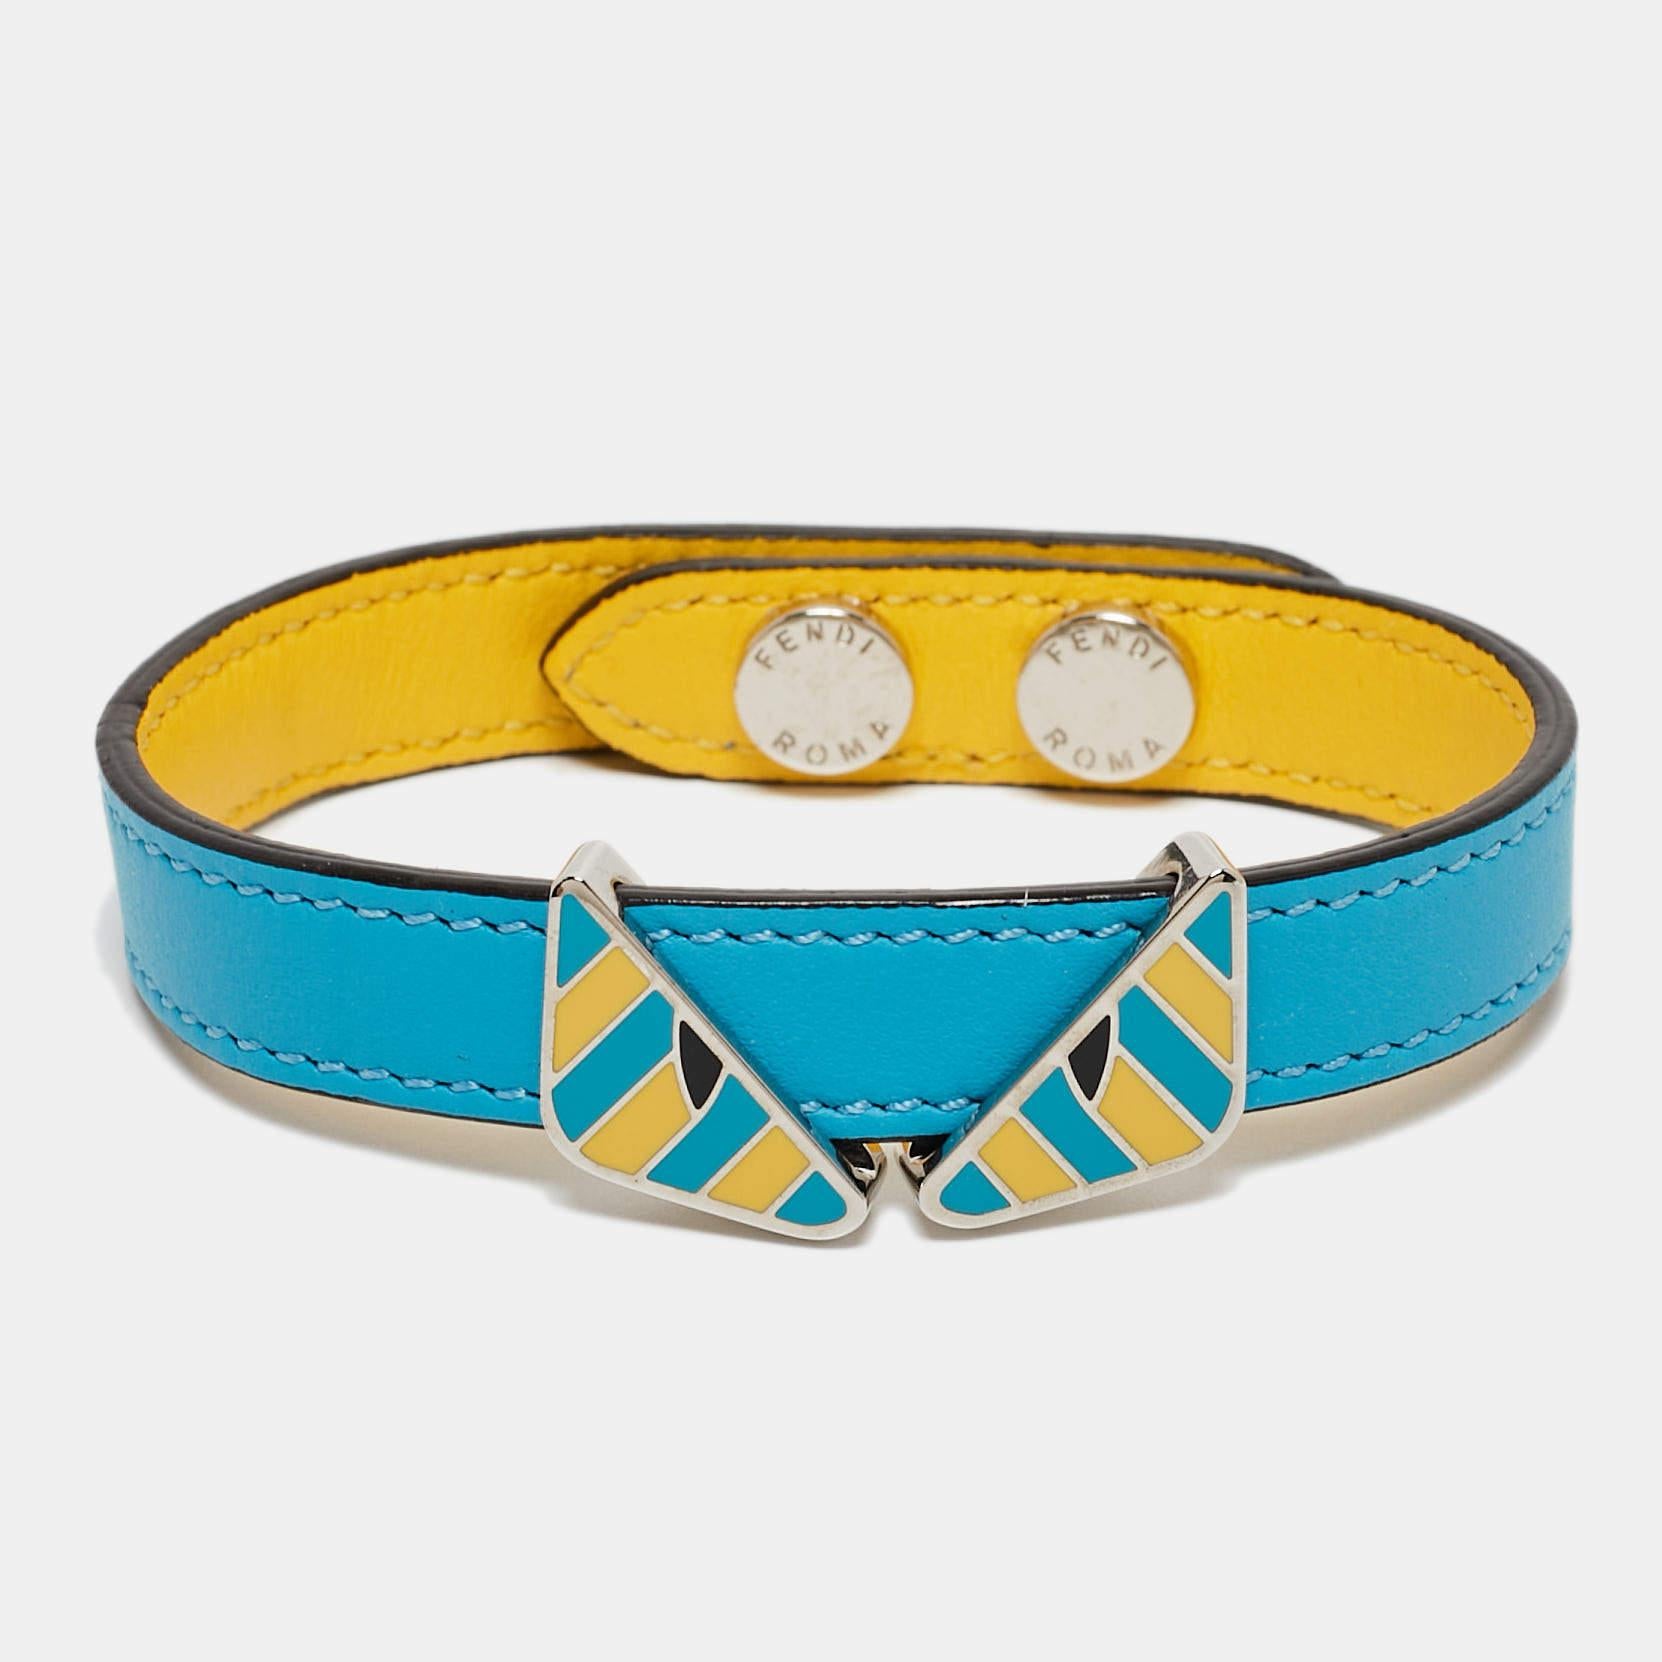 Les accessoires qui ont beaucoup de style valent la peine d'être achetés, comme ce bracelet enveloppant de Fendi. Il est fabriqué en cuir bicolore et porte des yeux de monstre en émail.

